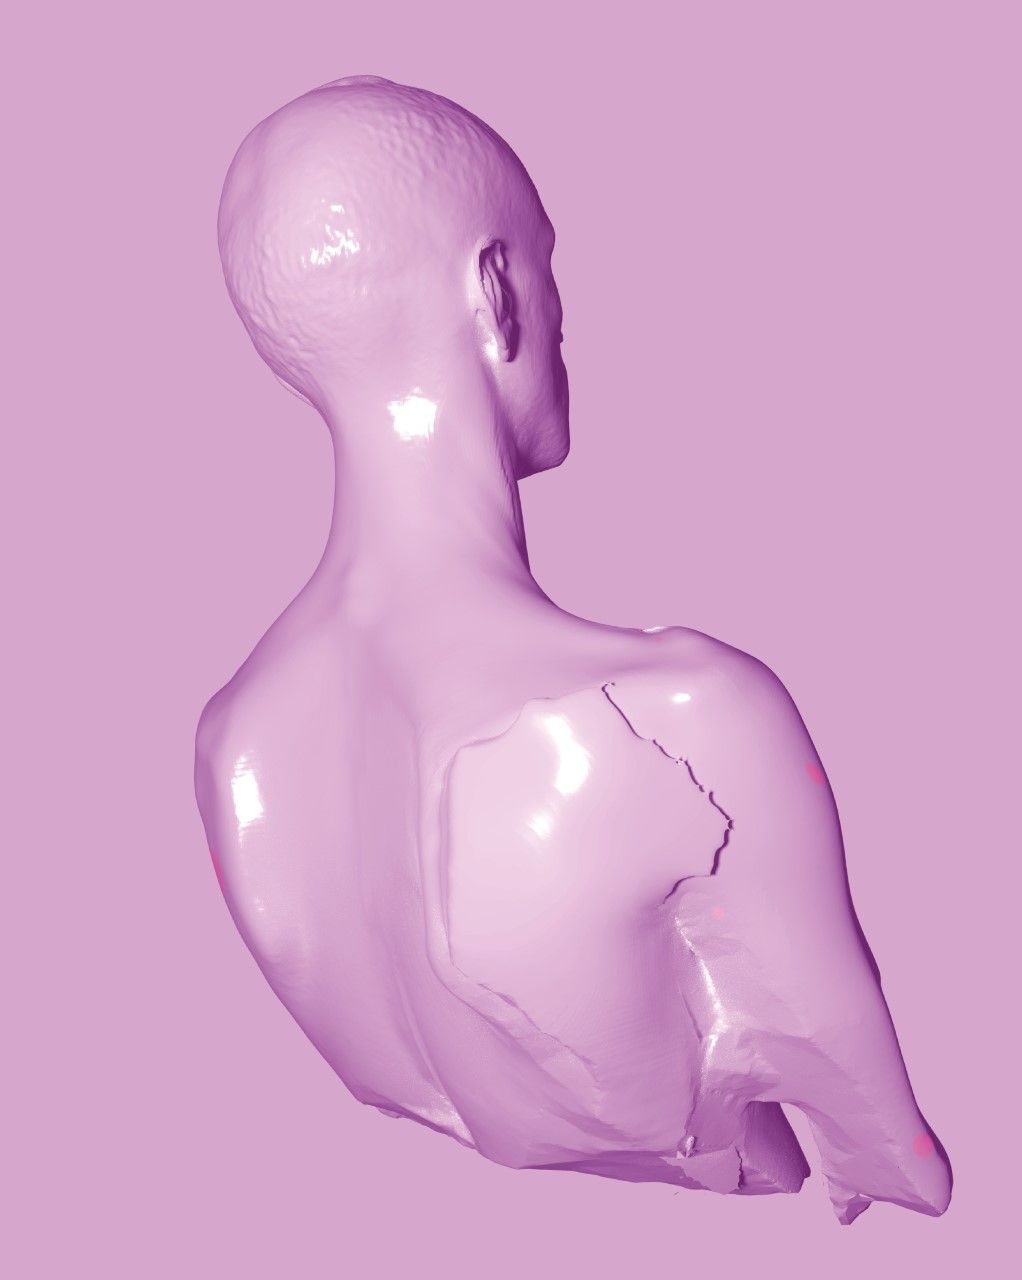 Ein Oberkörper von hinten als digitale Skulptur. Alles ist rosa. Das Material wirkt stein-artig. Es bricht. Die Skulptur glänzt.